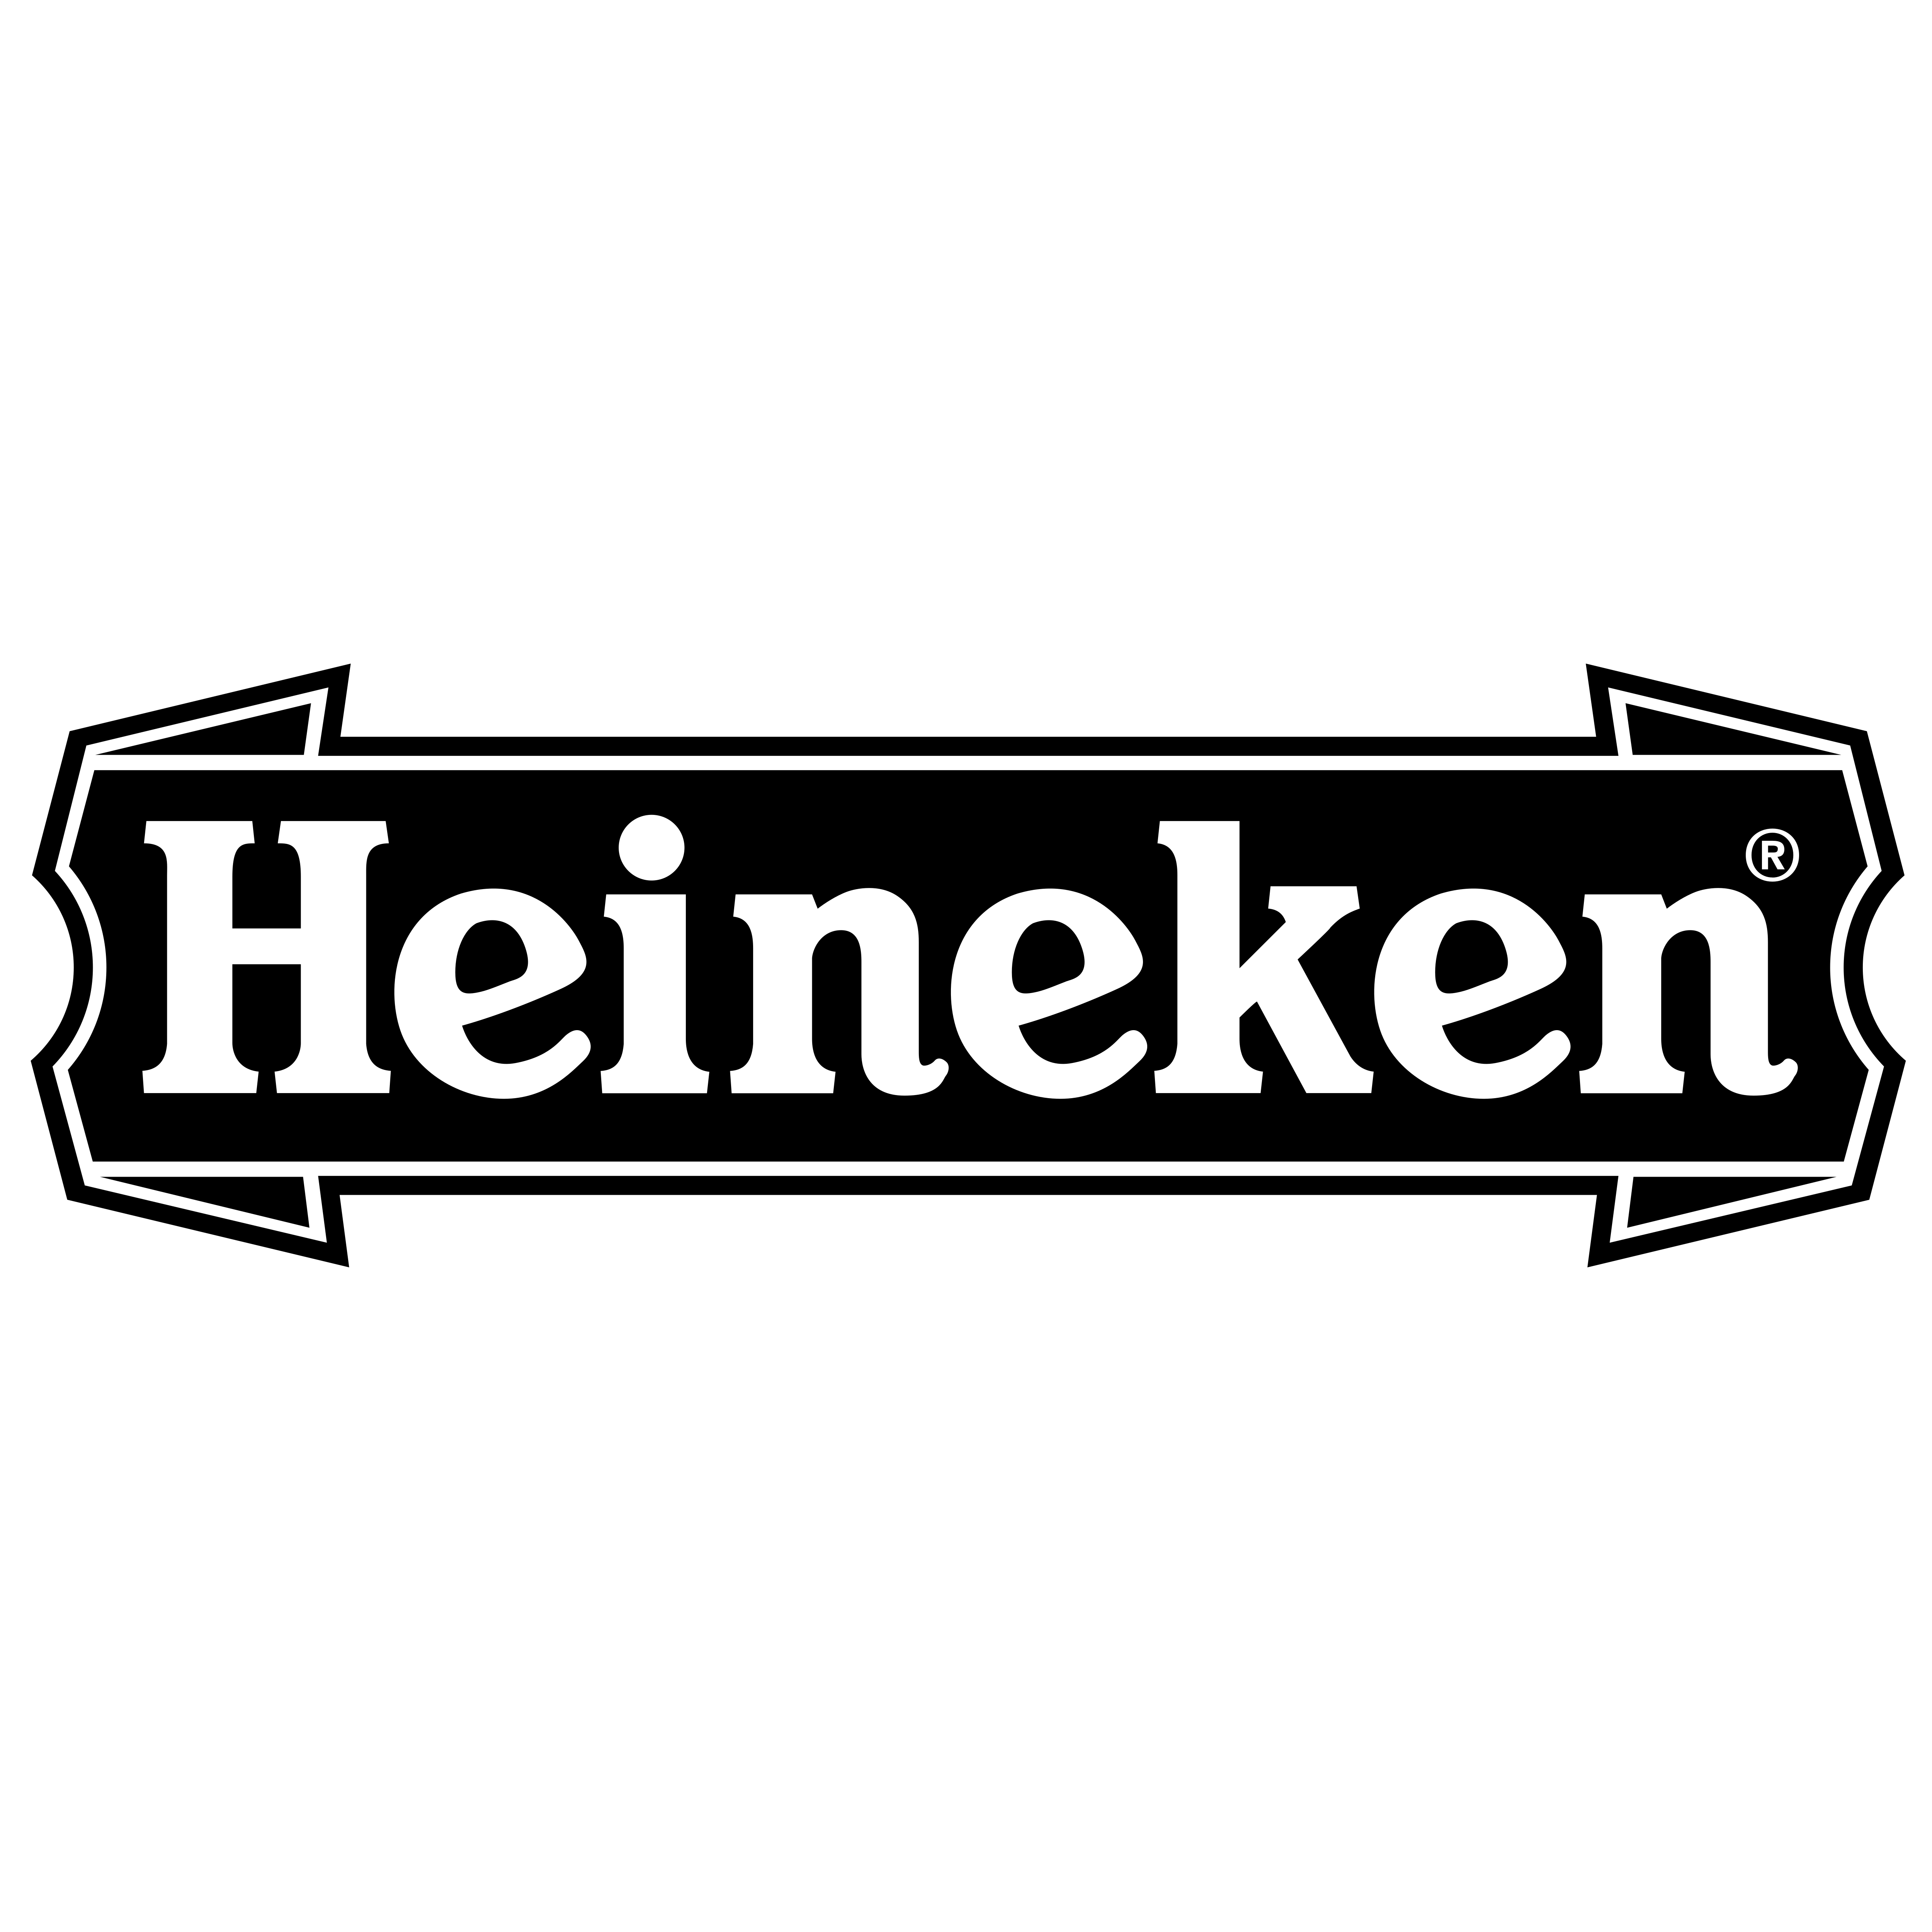 Heineken - Logos Download